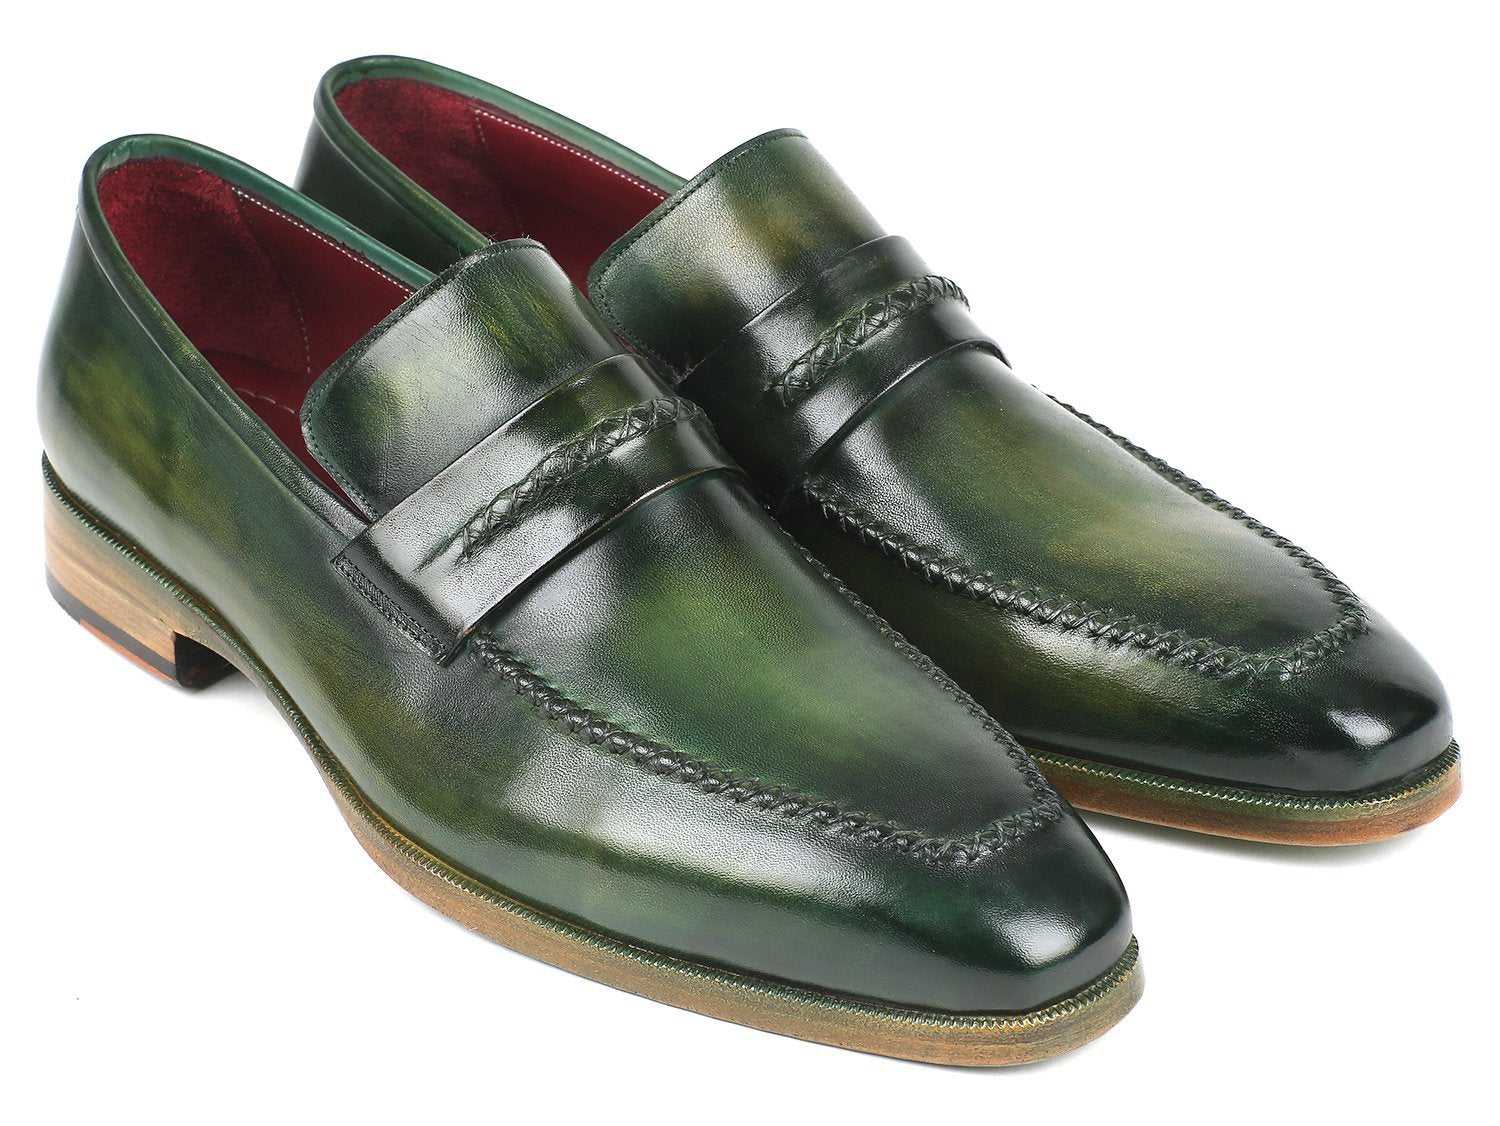 Verdone - Men's Loafer Shoes Green